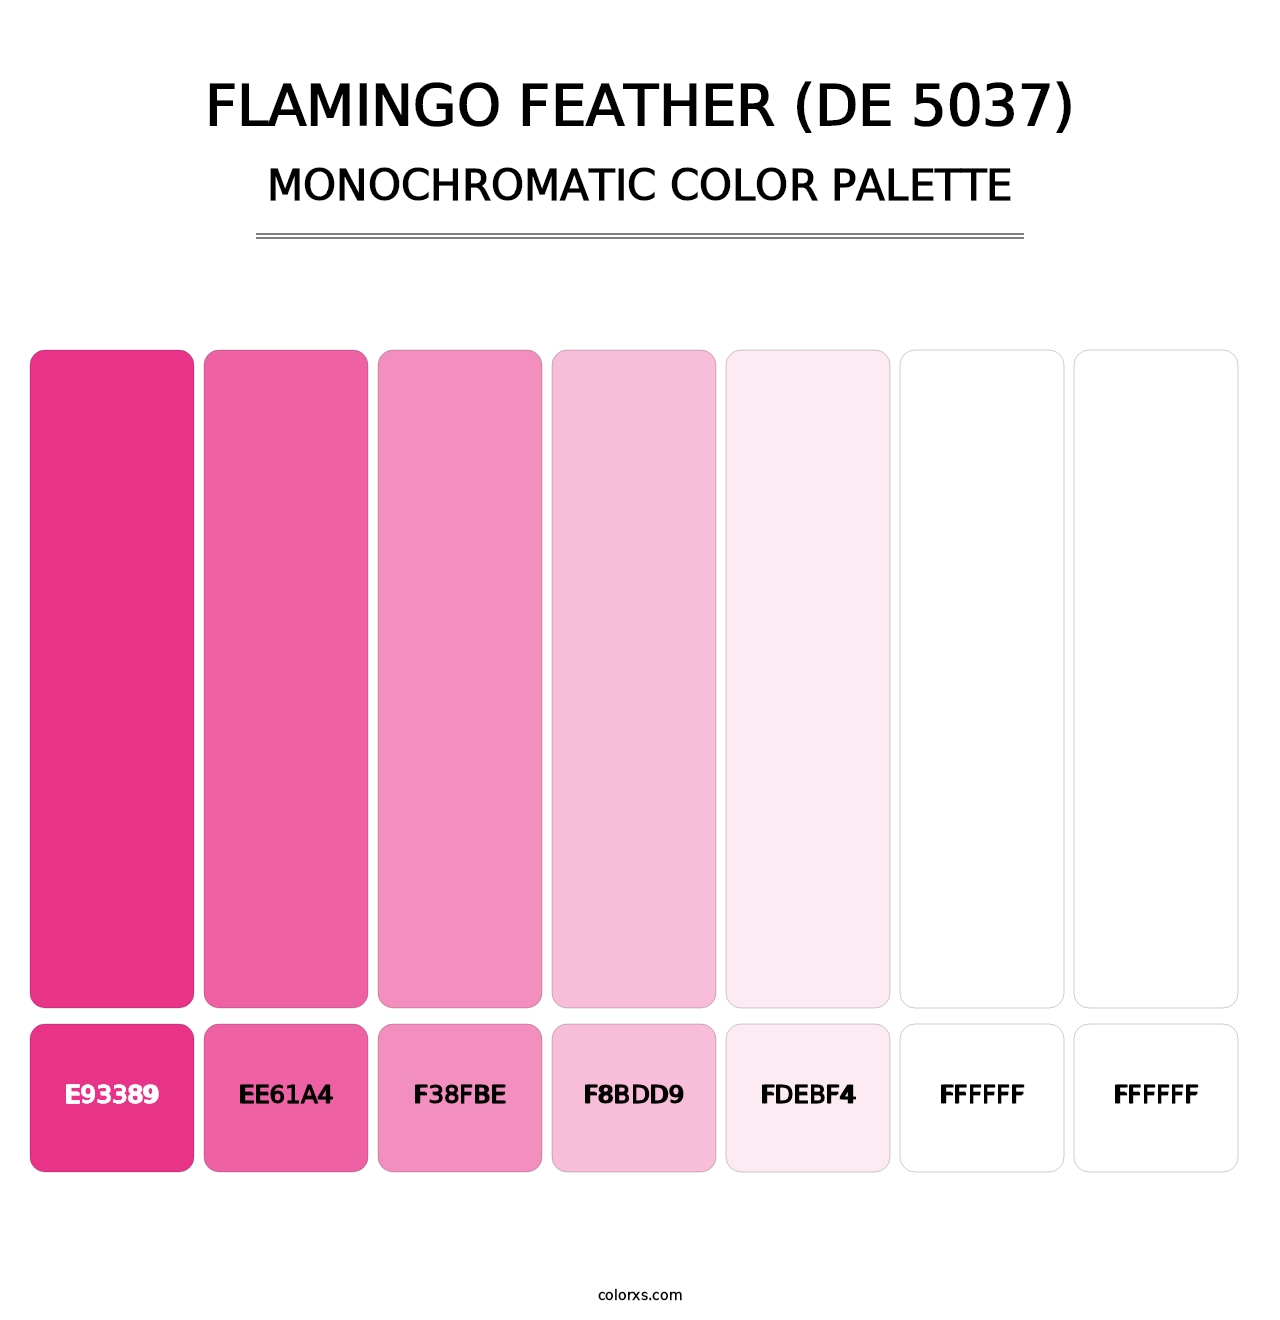 Flamingo Feather (DE 5037) - Monochromatic Color Palette